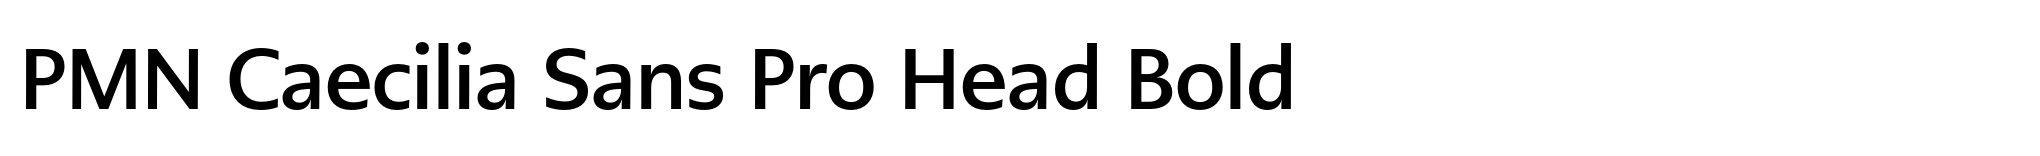 PMN Caecilia Sans Pro Head Bold image